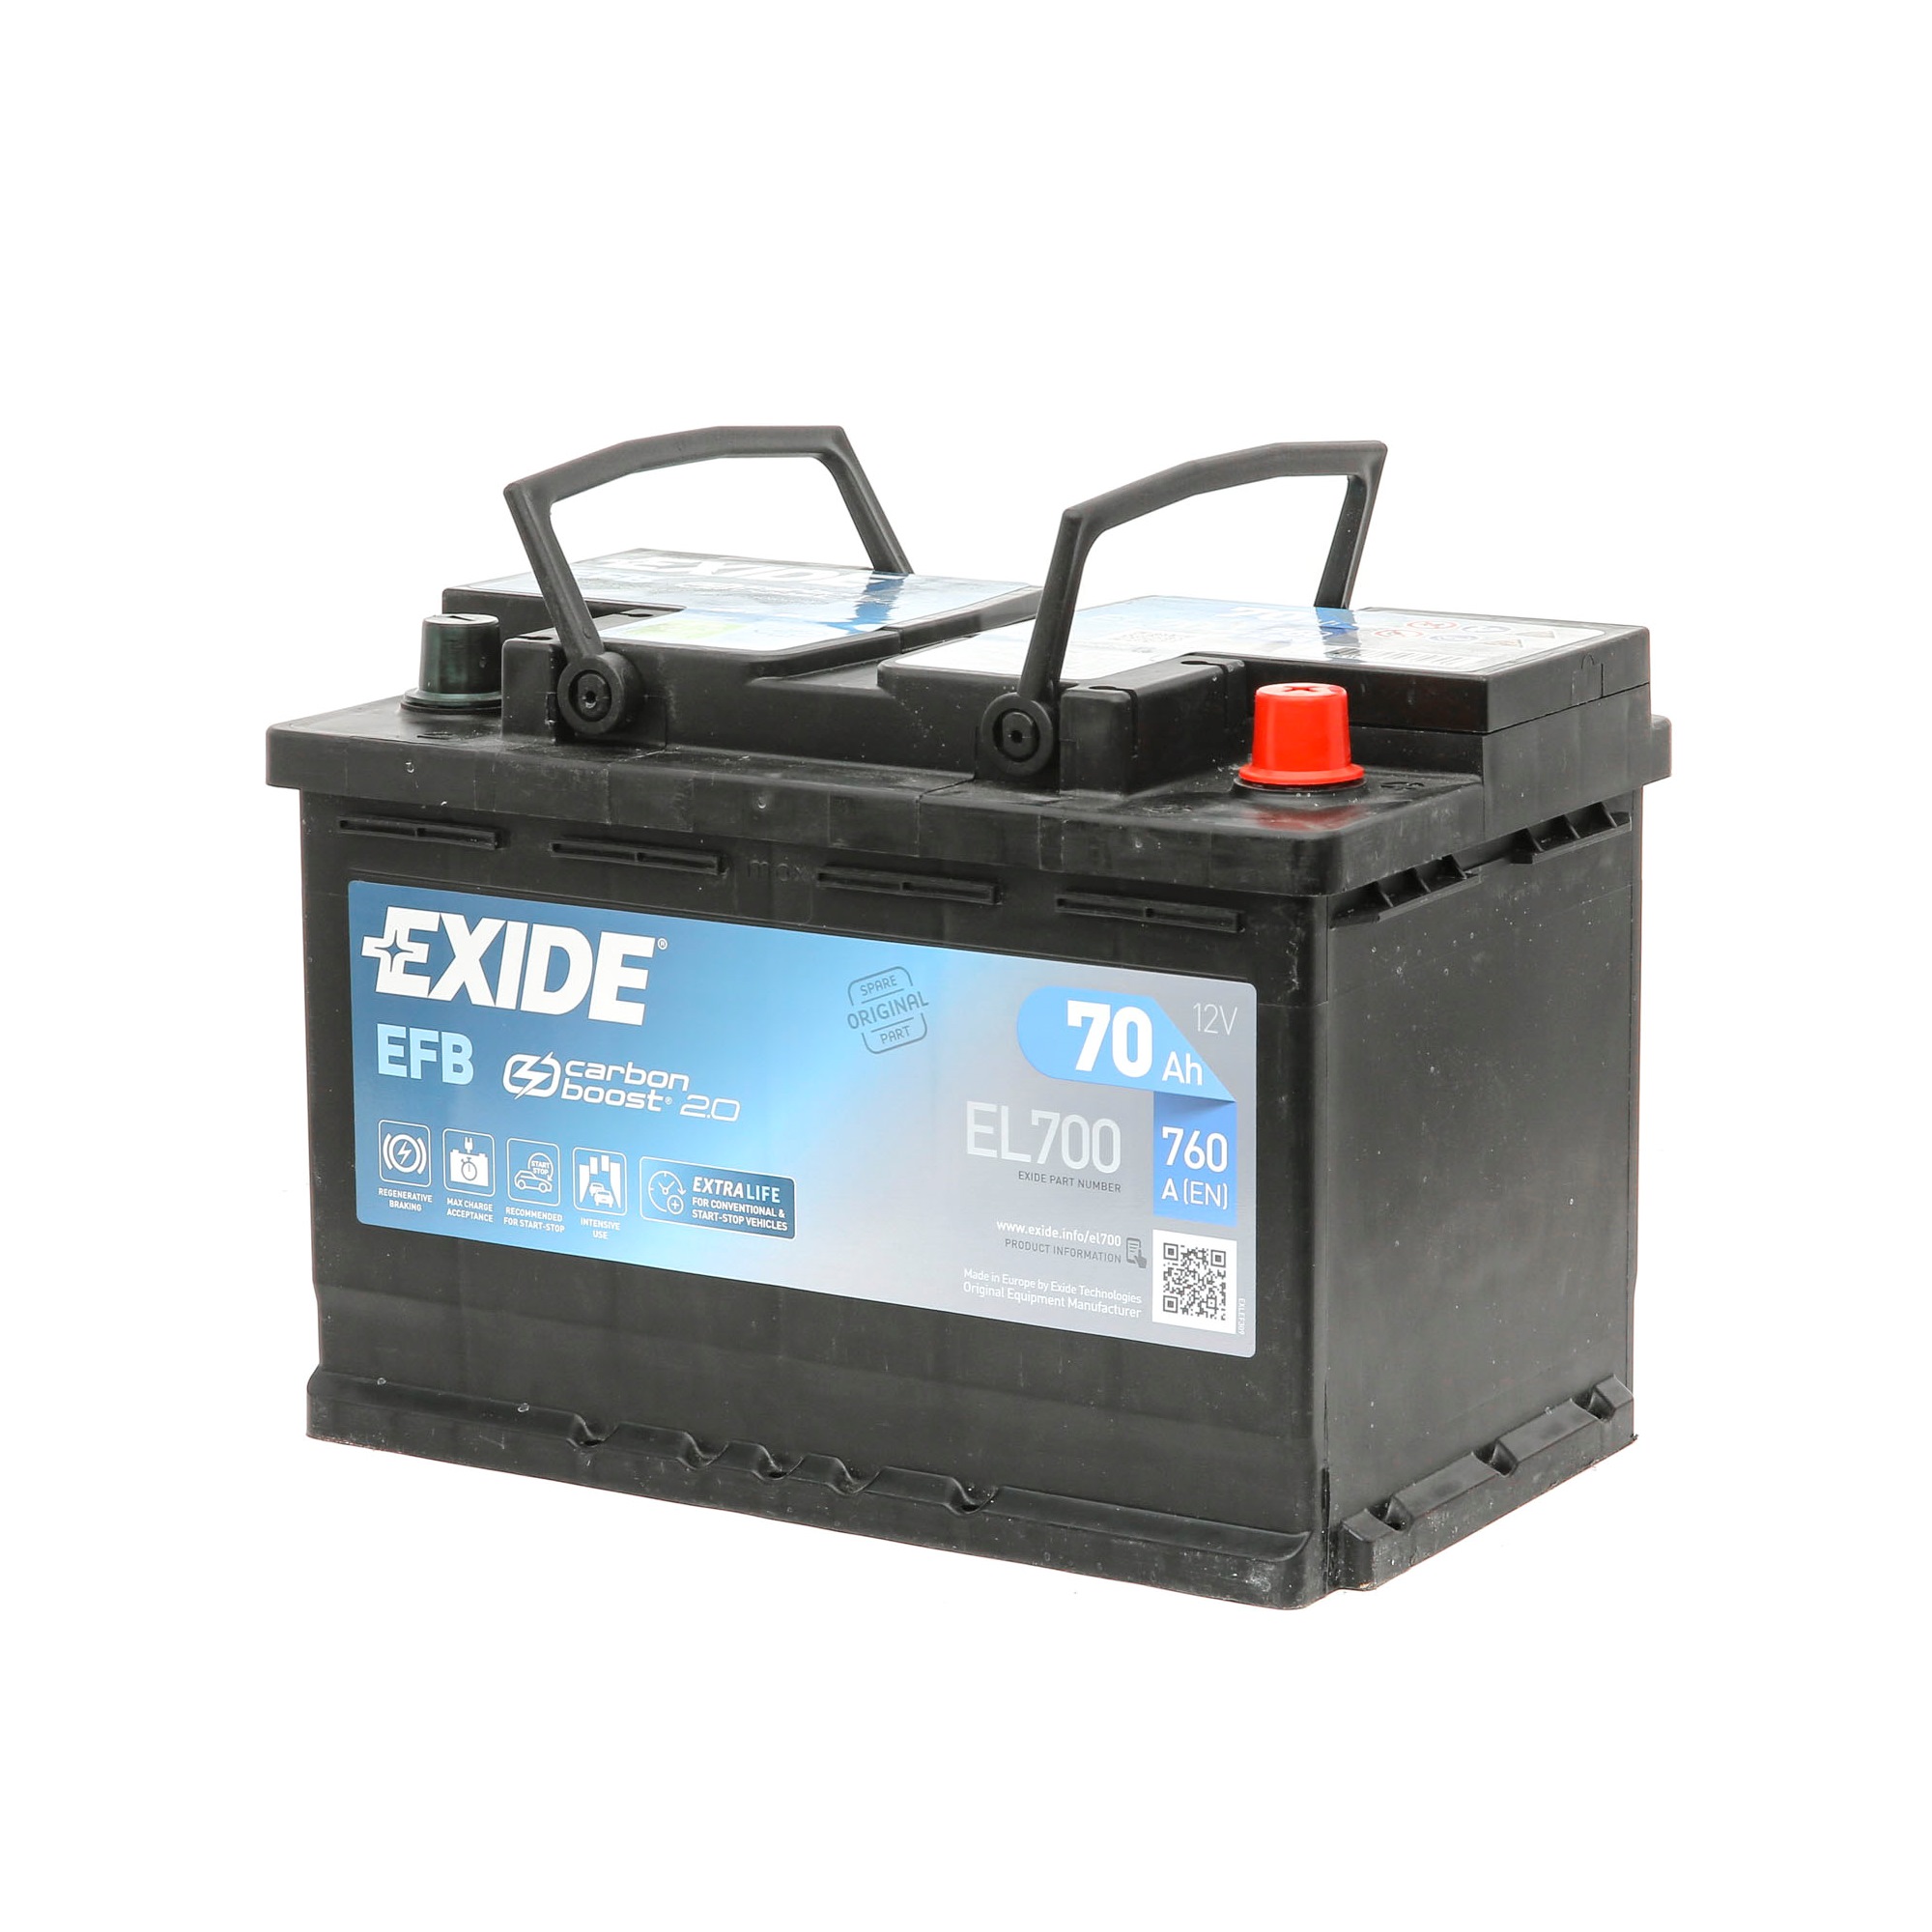 EFB60SS EXIDE EL700 Starterbatterie 12V 70Ah 760A B13 EFB-Batterie Audi in Original Qualität